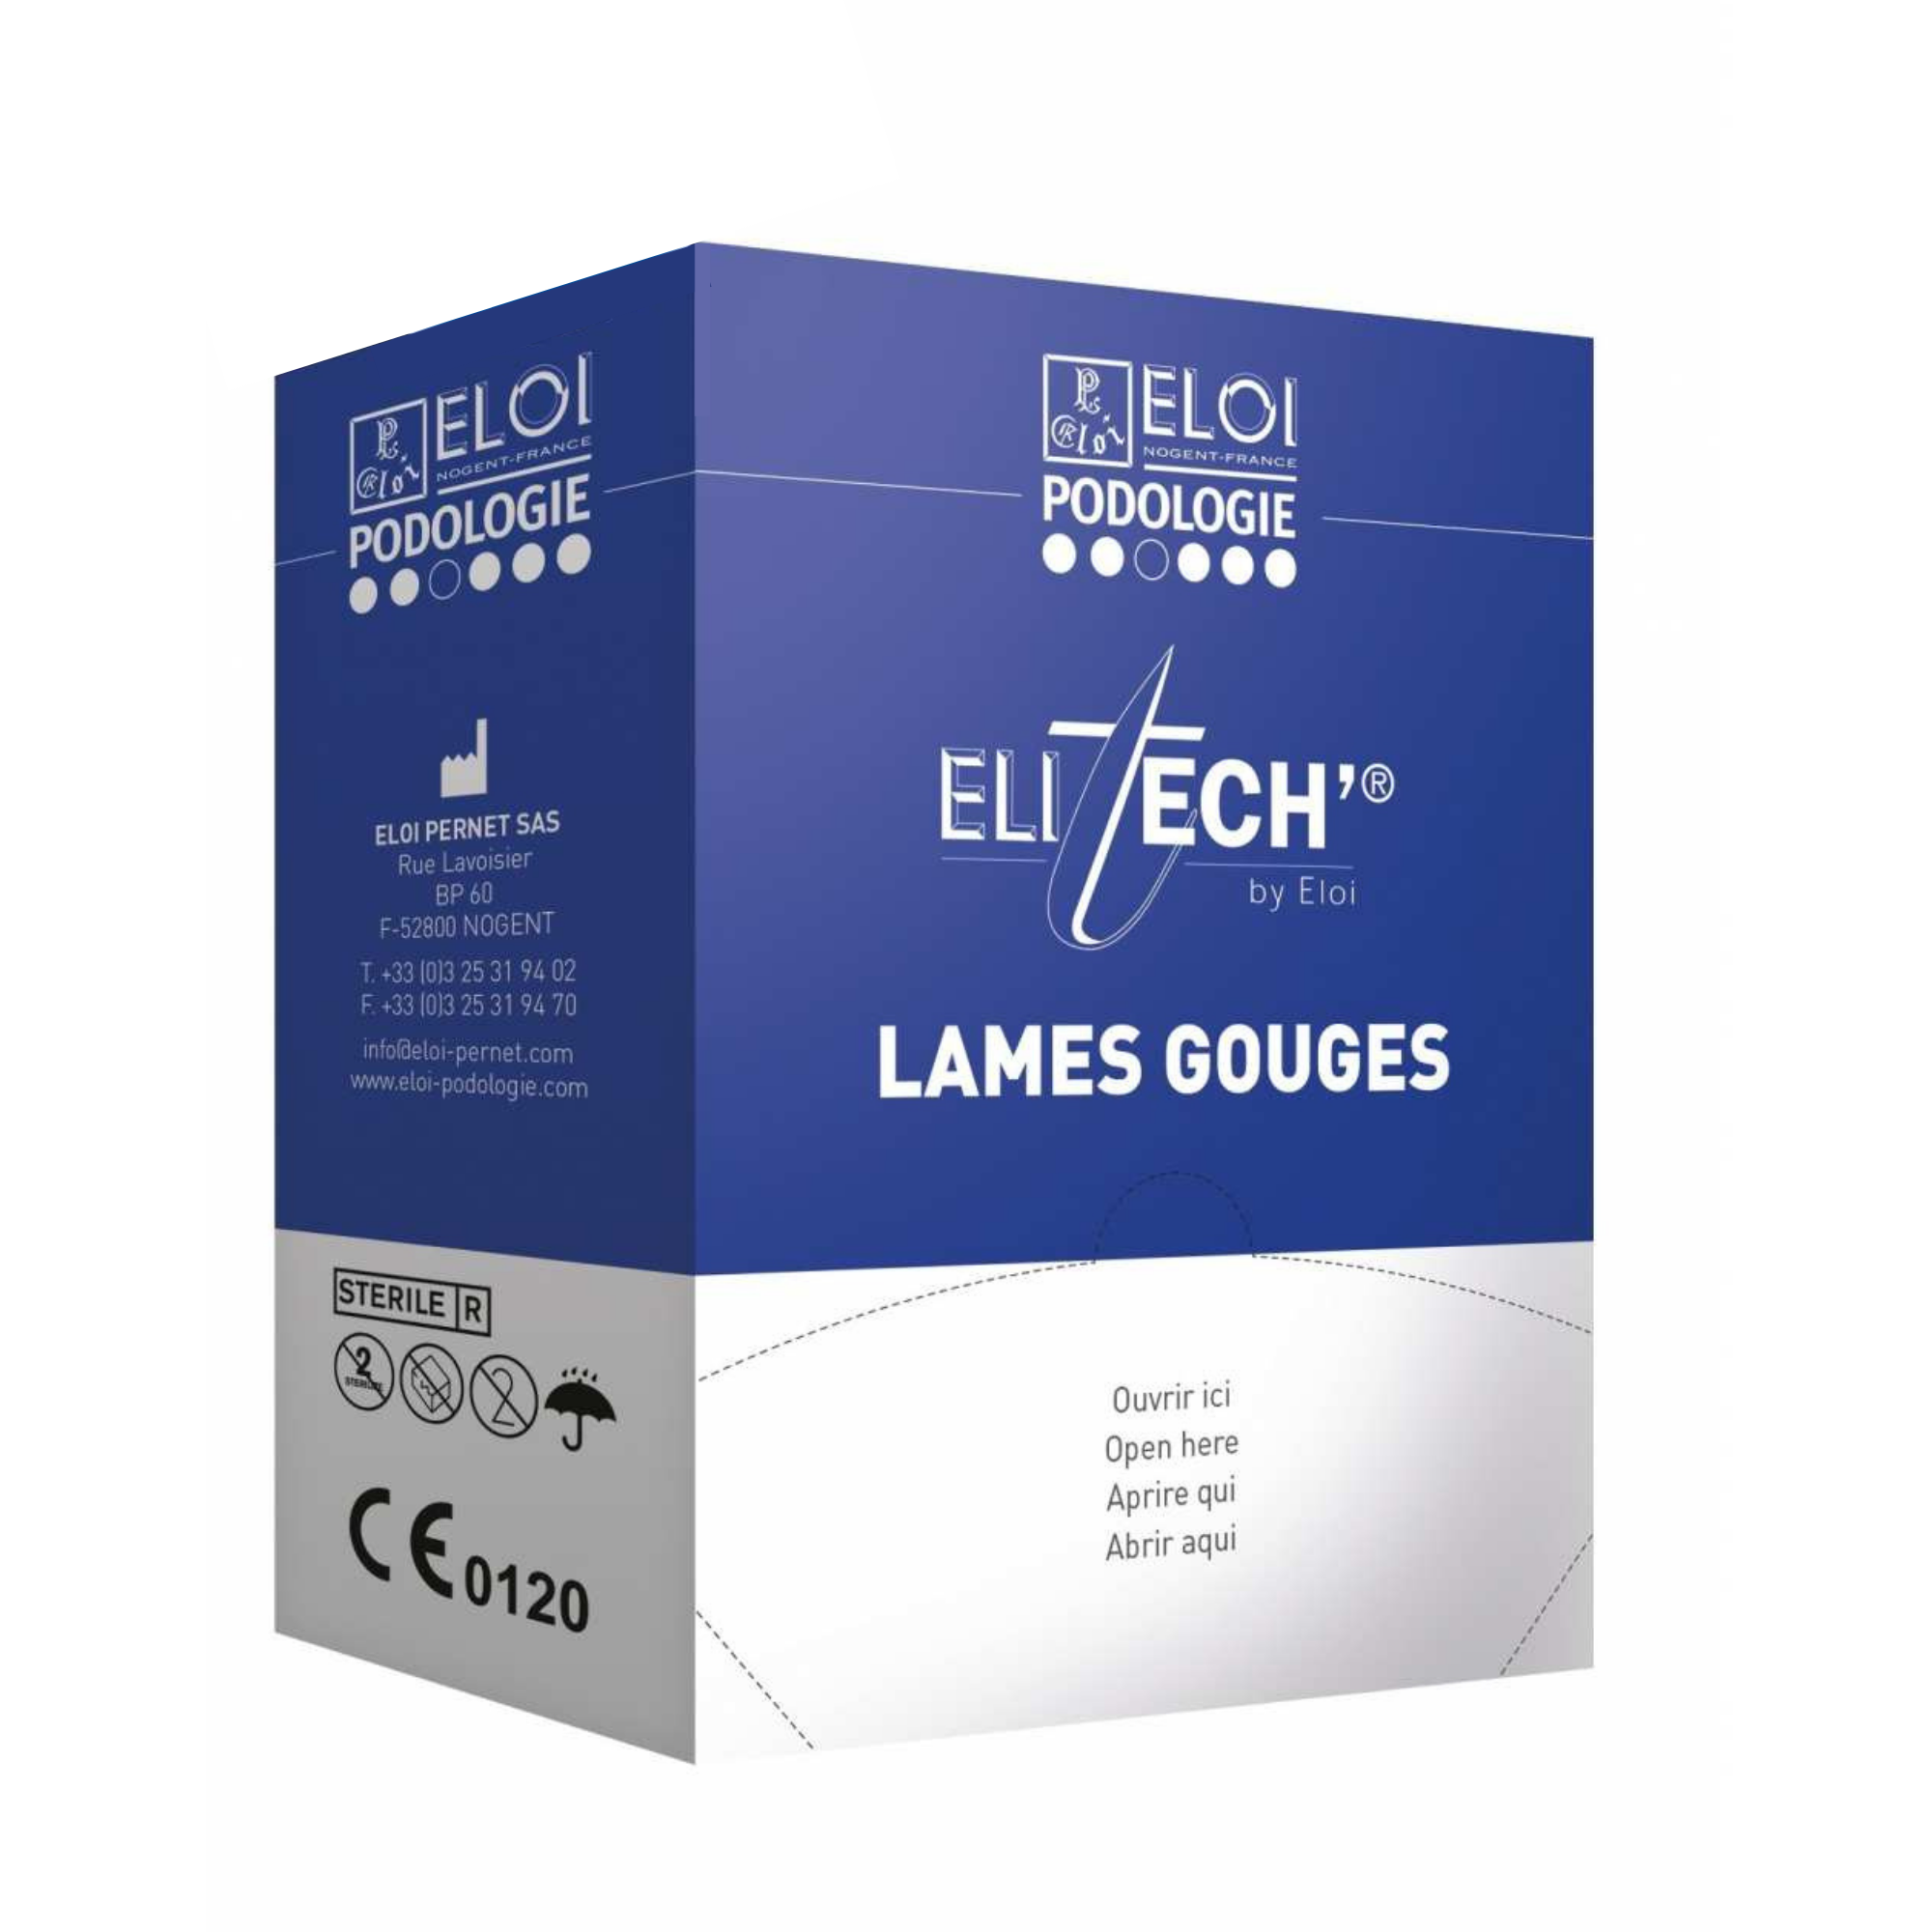 500 lames de gouges N°1 - Elitech by Eloi Eloi Podologie